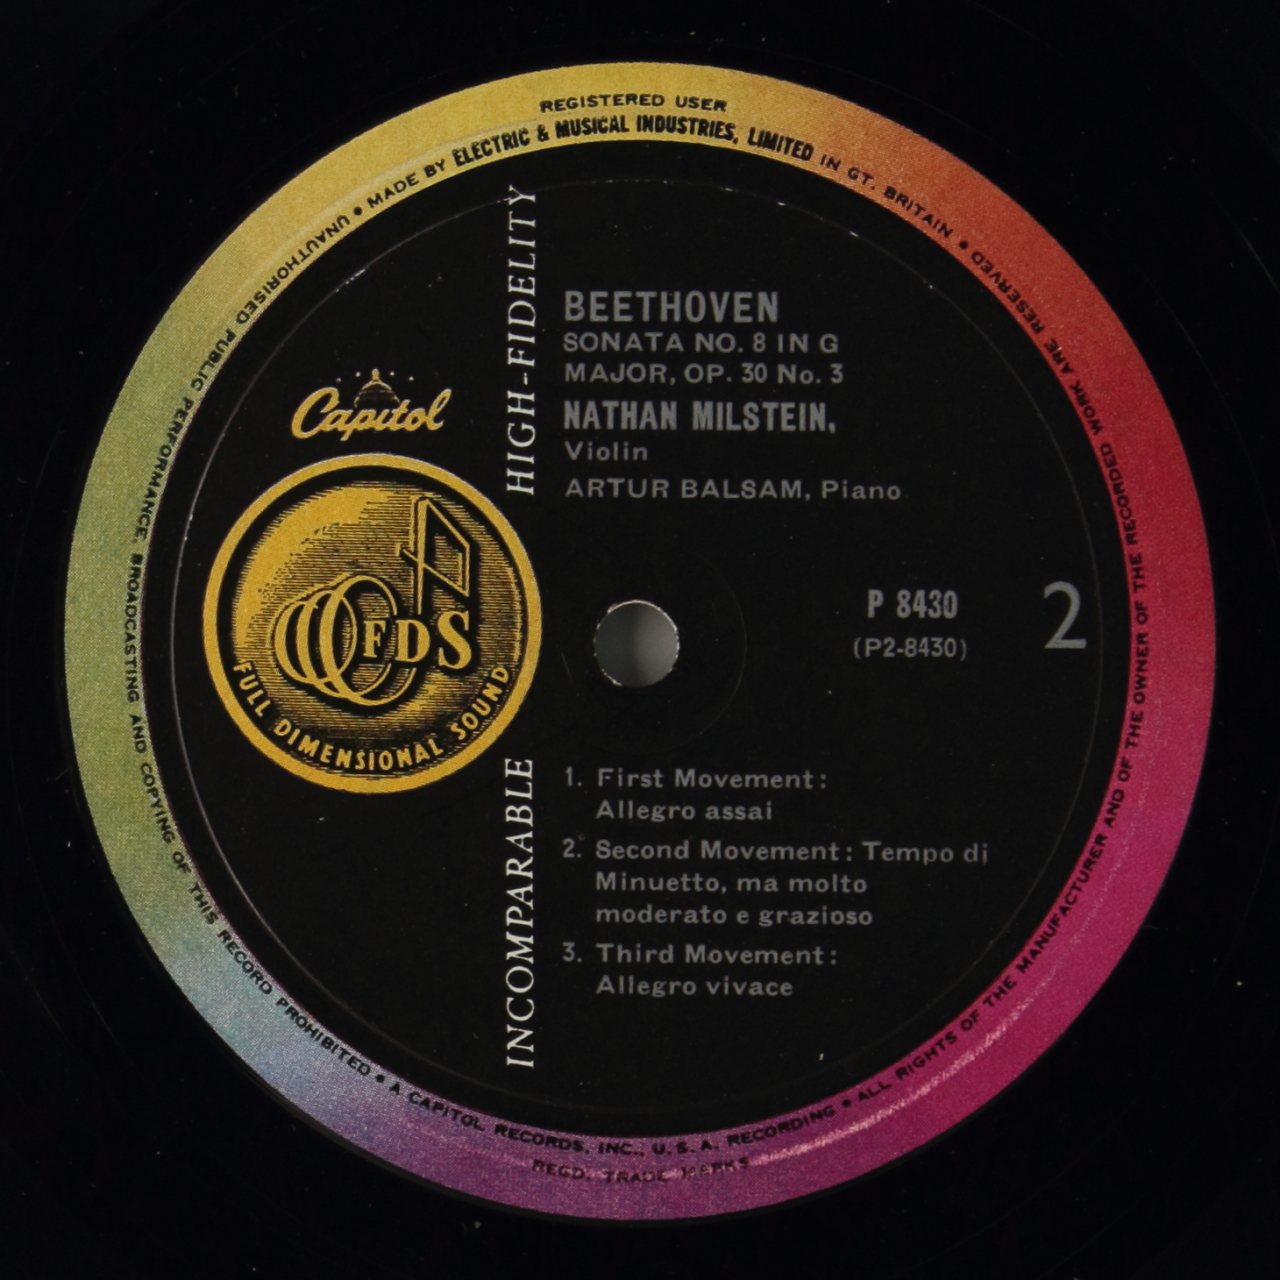 Beethoven: Sonata Nº 9 in A Major, Op. 47; Sonata Nº 8 in G Major, Op. 30 Nº 3 - Kreuzer